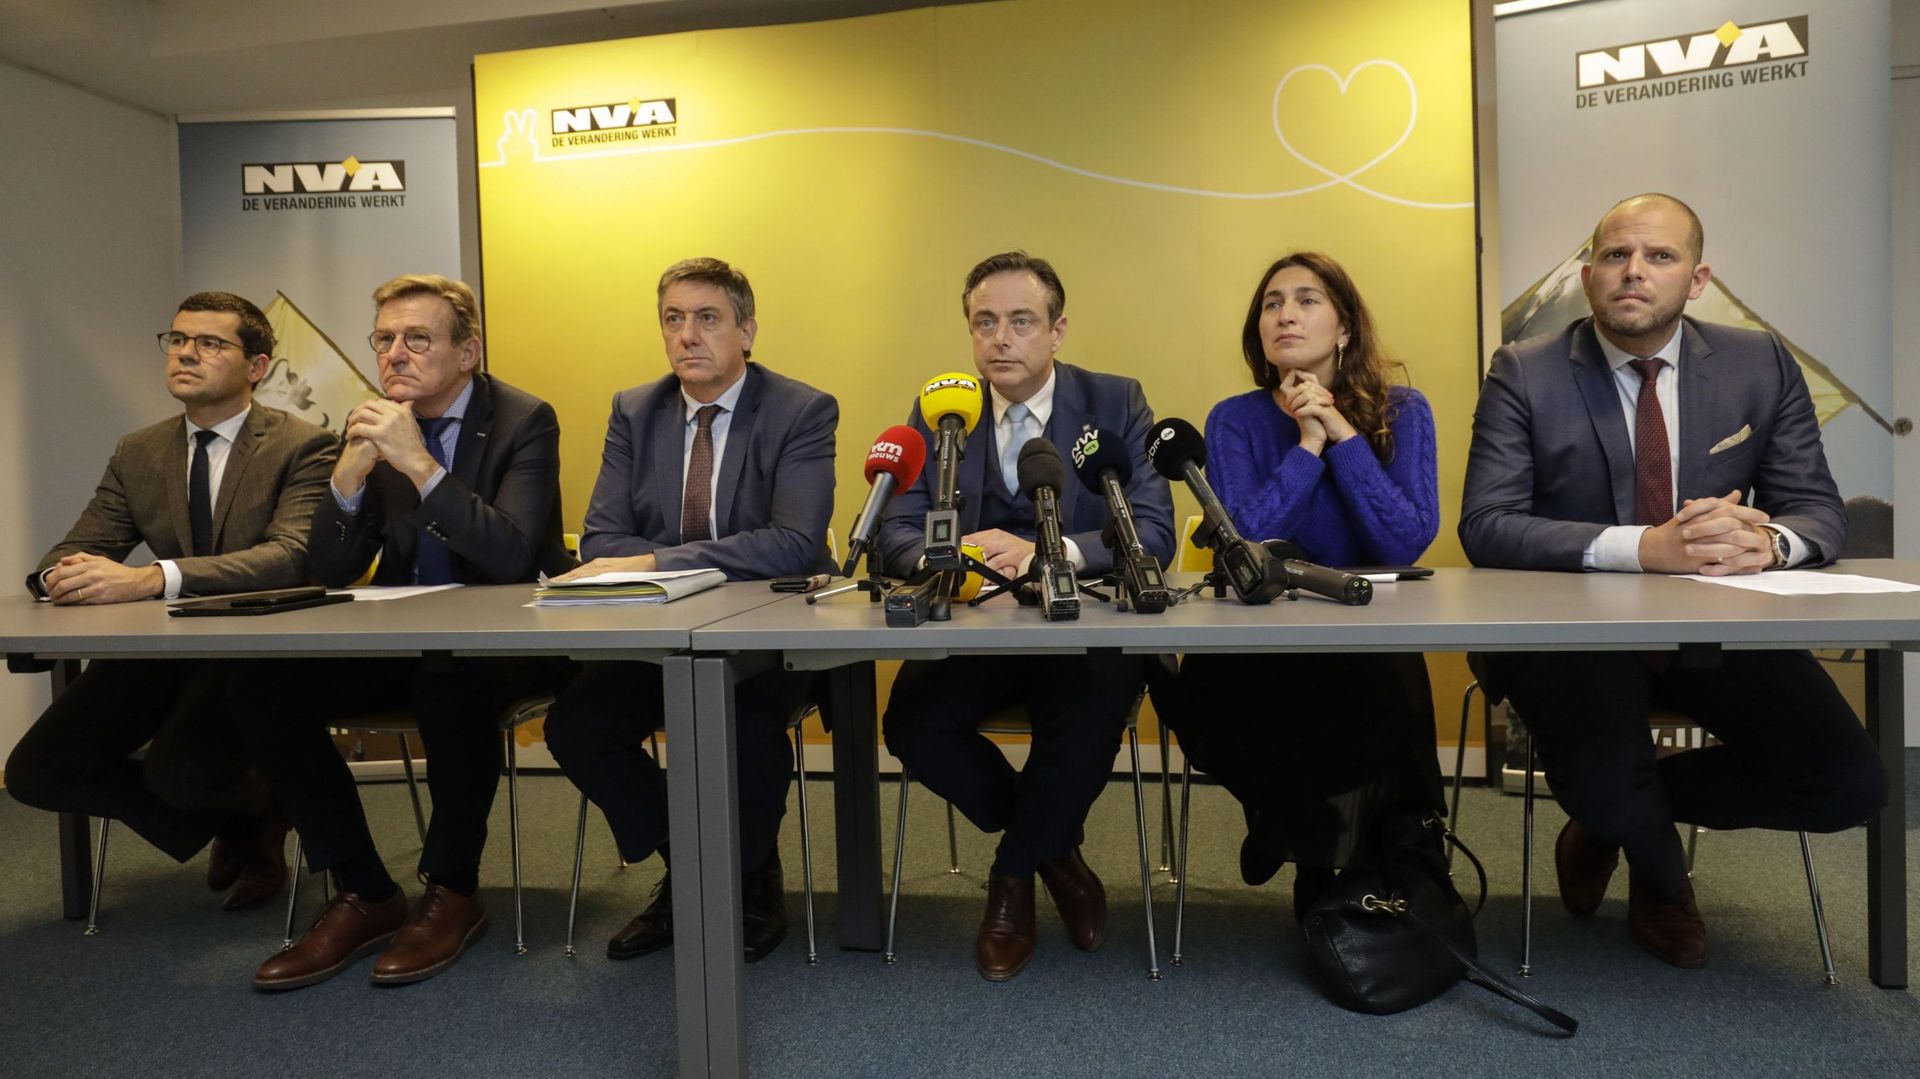 Les ex-ministres N-VA avec Bart De Wever